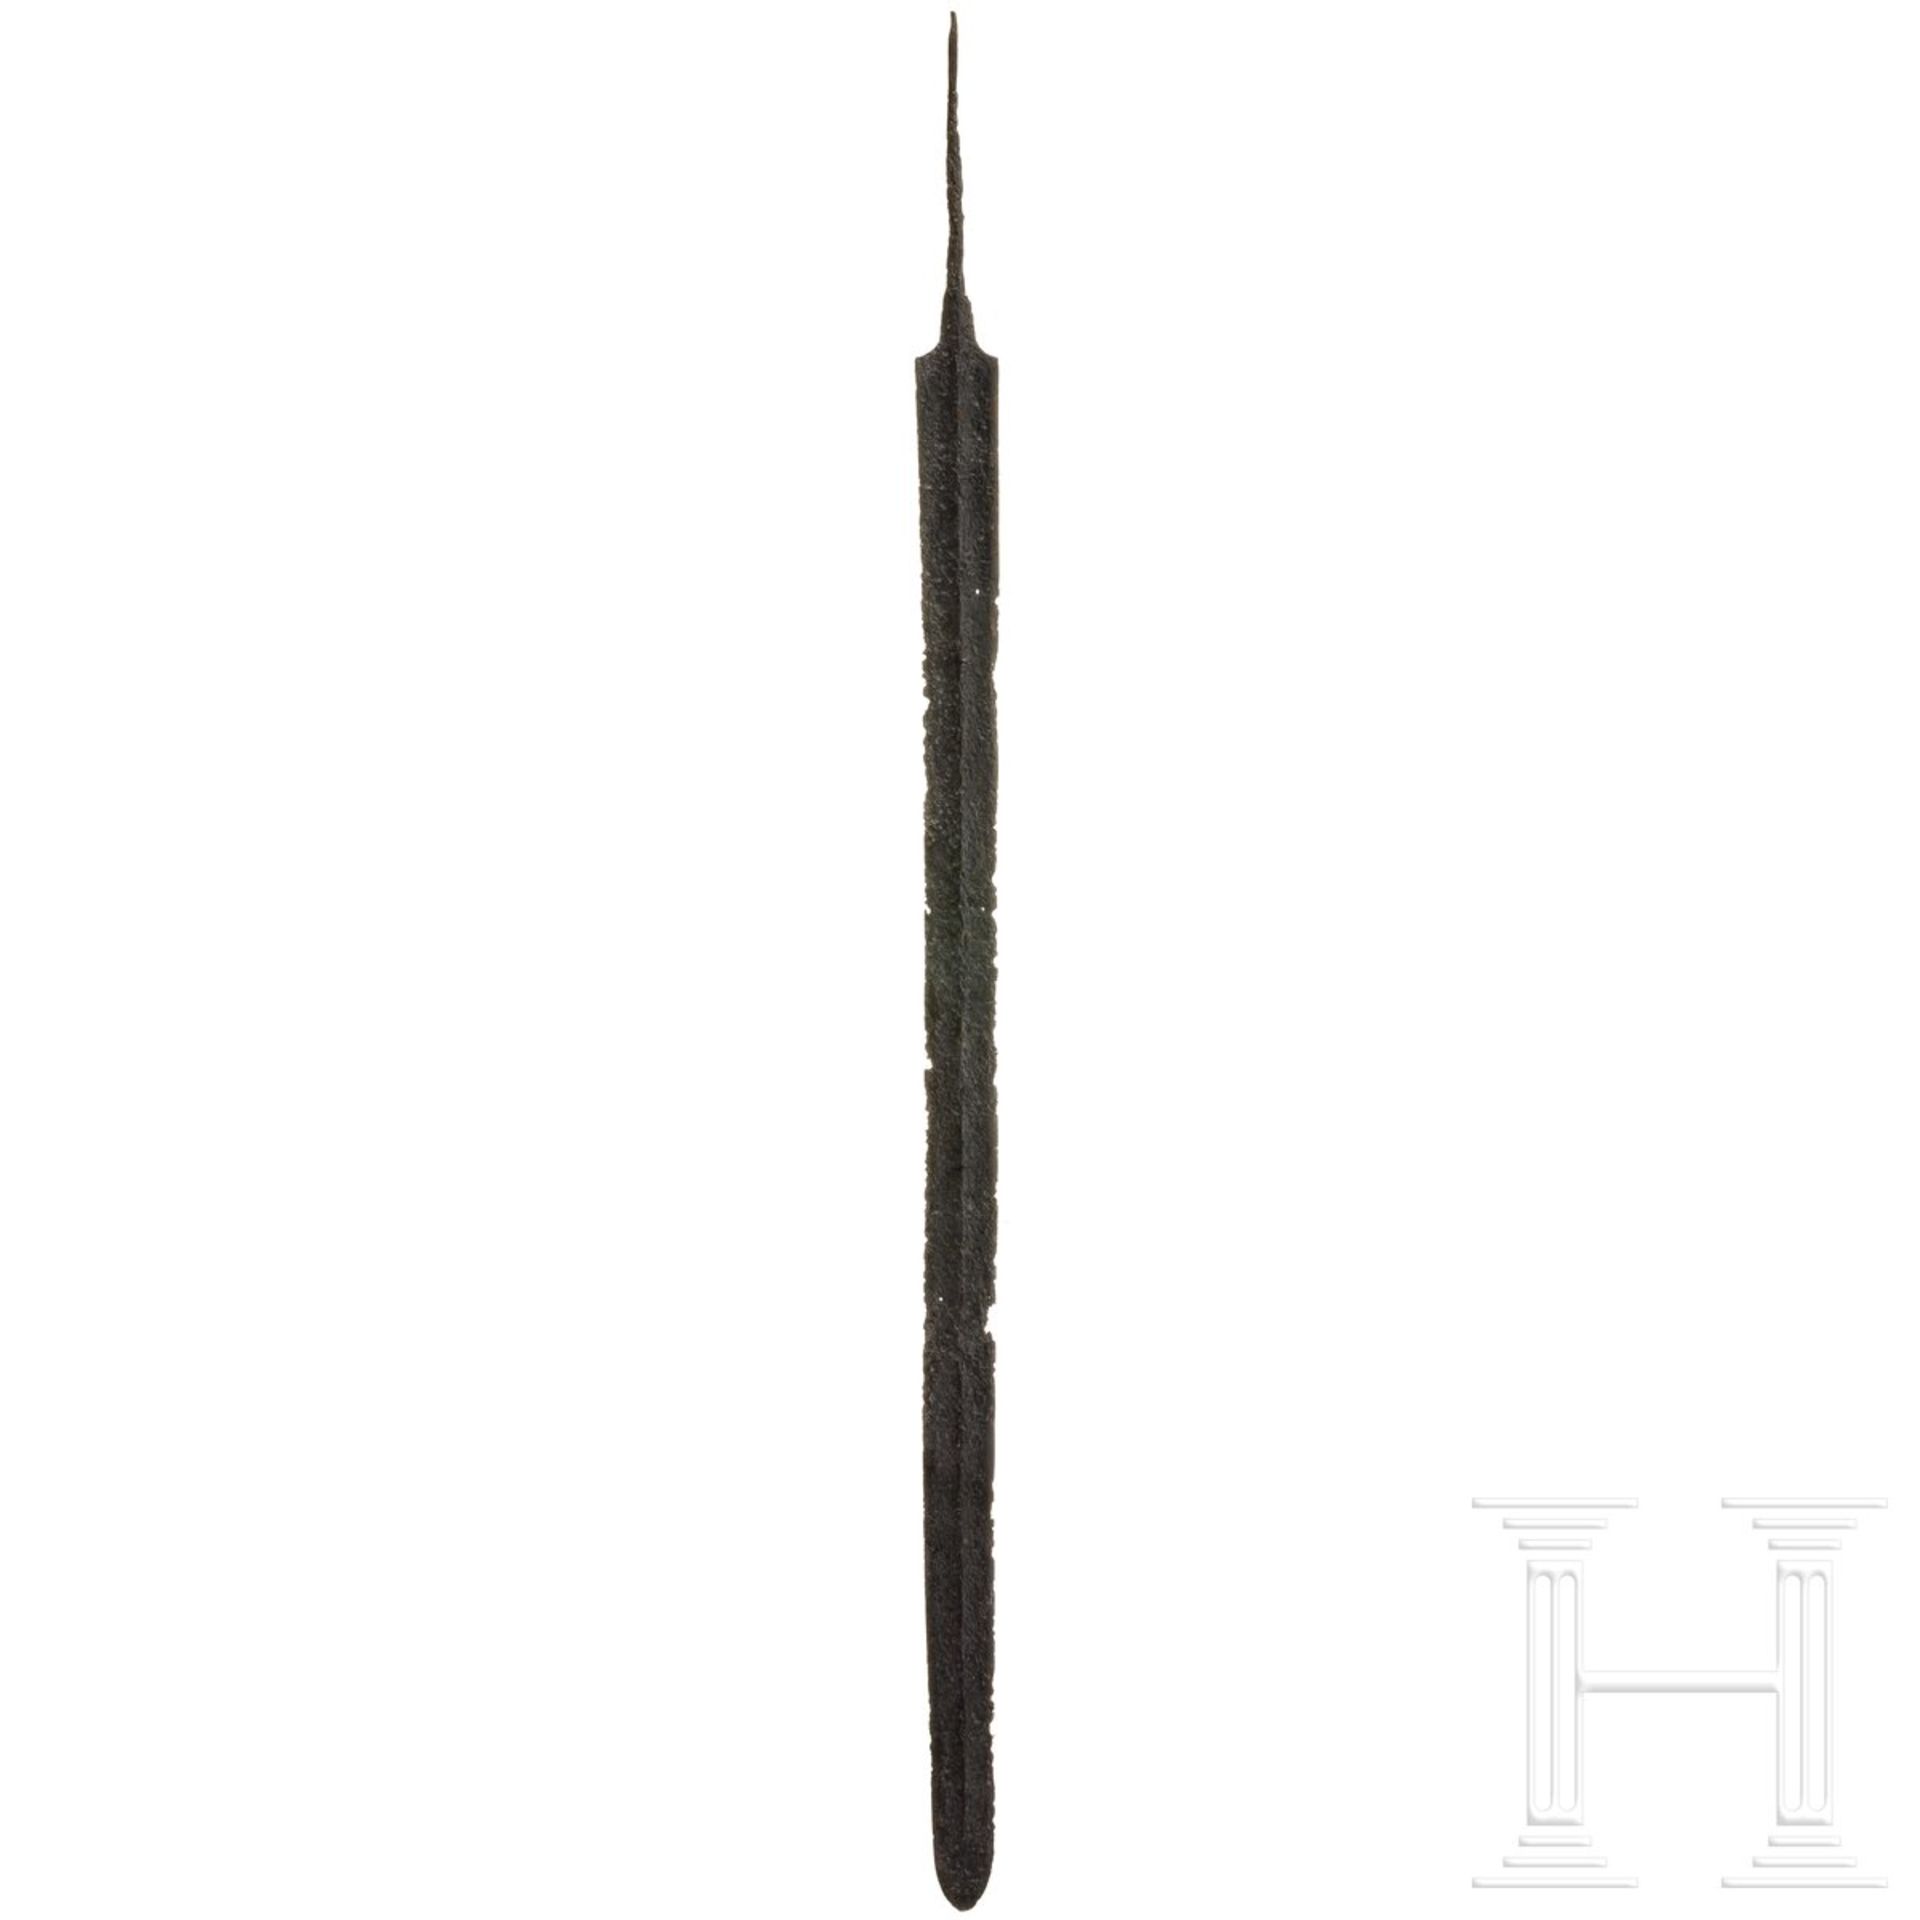 Eisenschwert, spätlatènezeitlich, 1. Jhdt. v. Chr. - Image 2 of 4